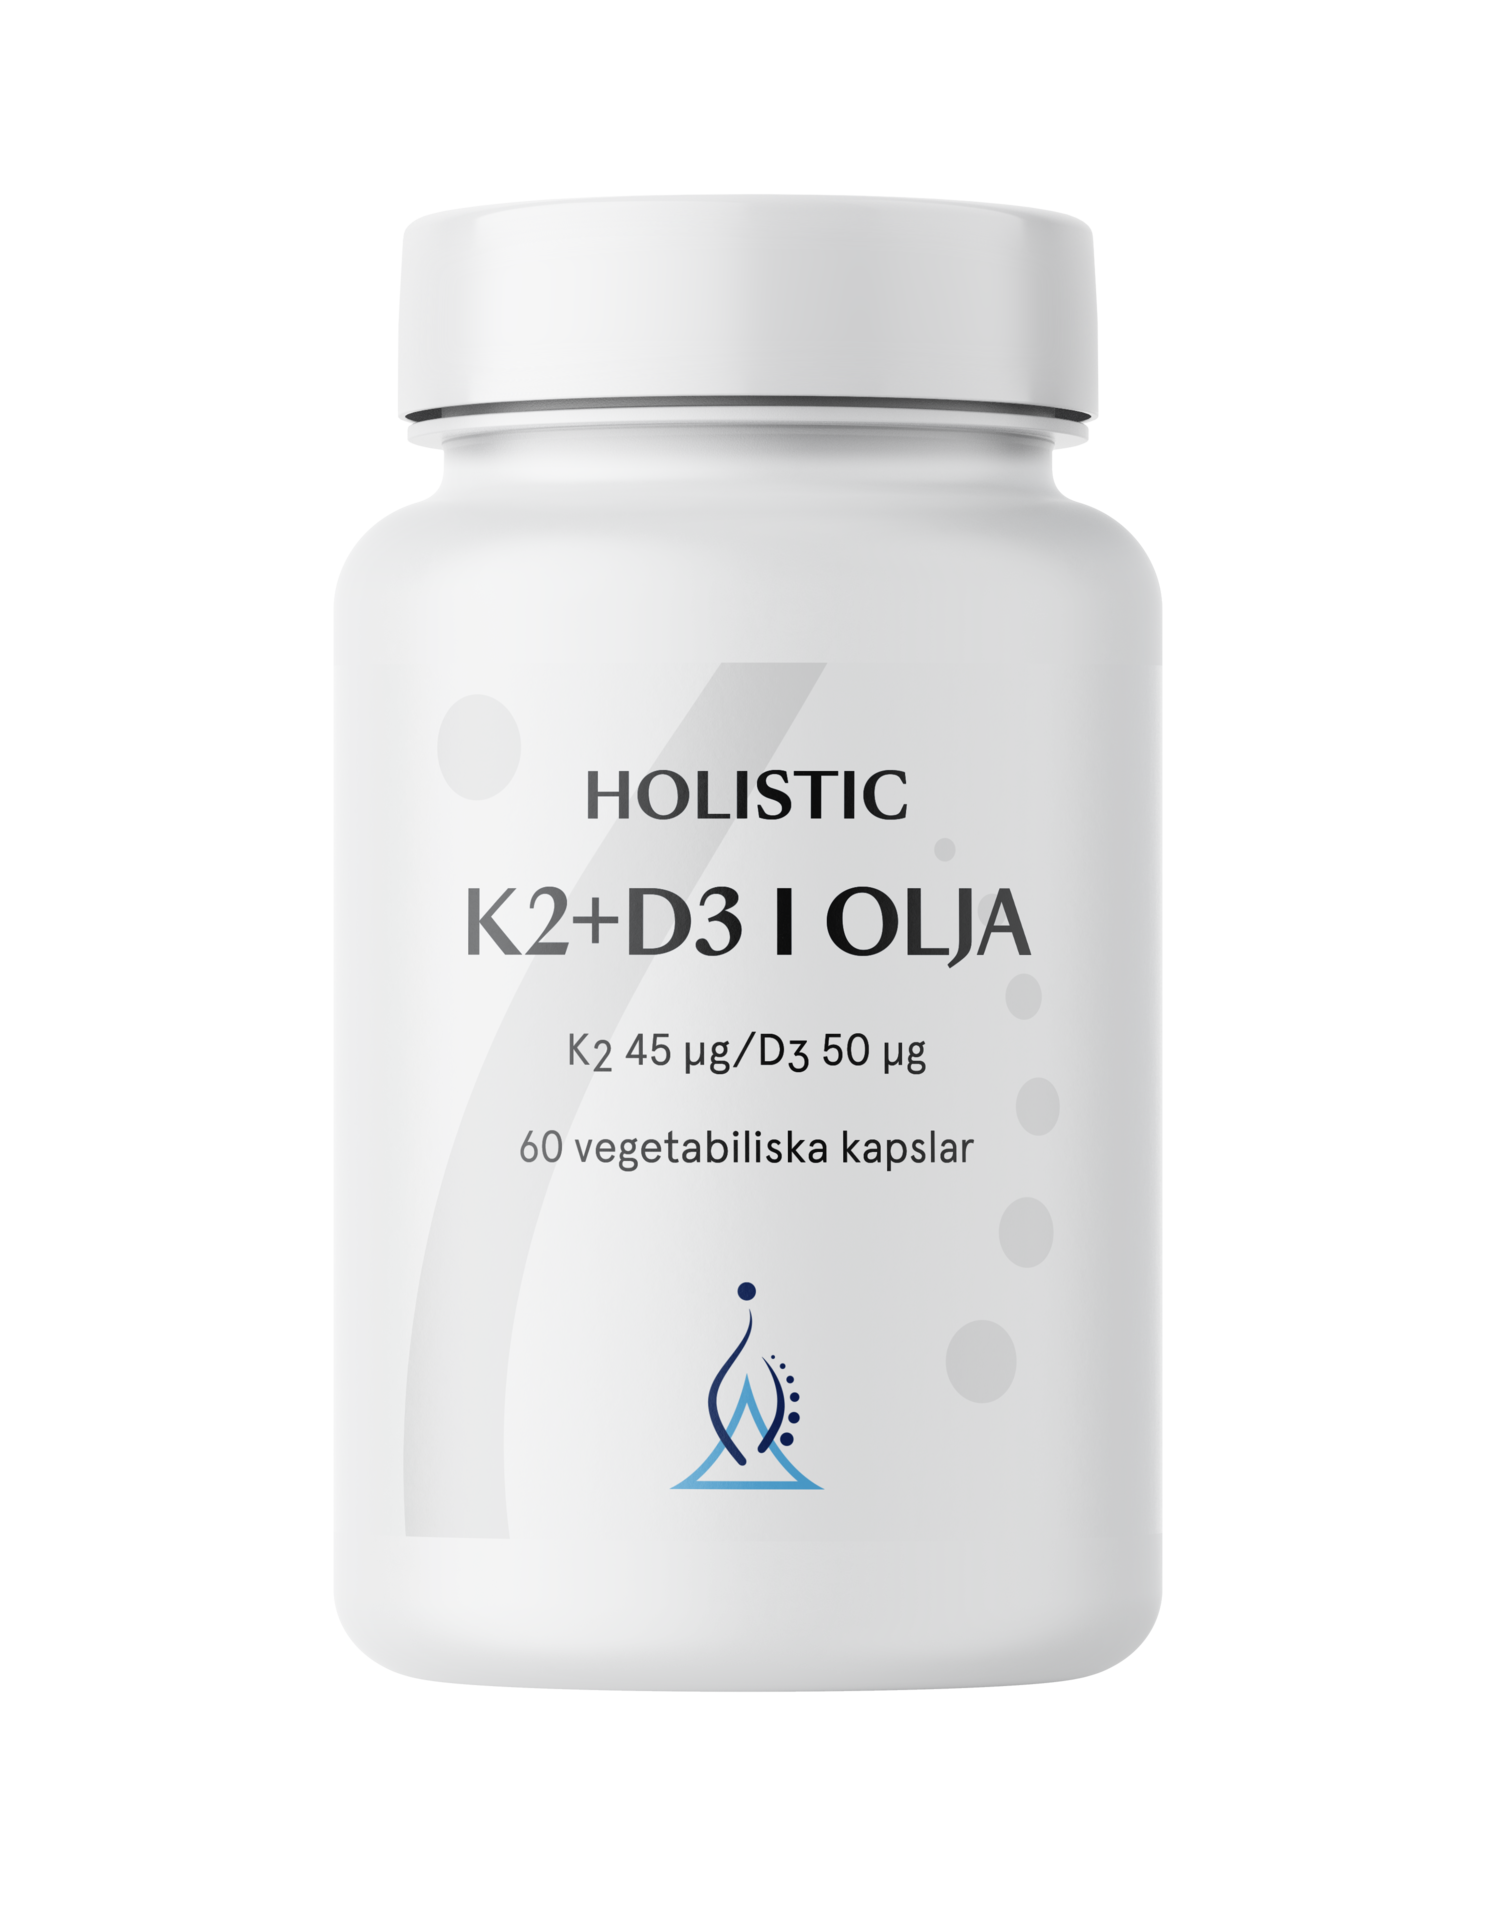 Holistic K2+D3-vitamin i olivolja 60 vegetabiliska kapslar